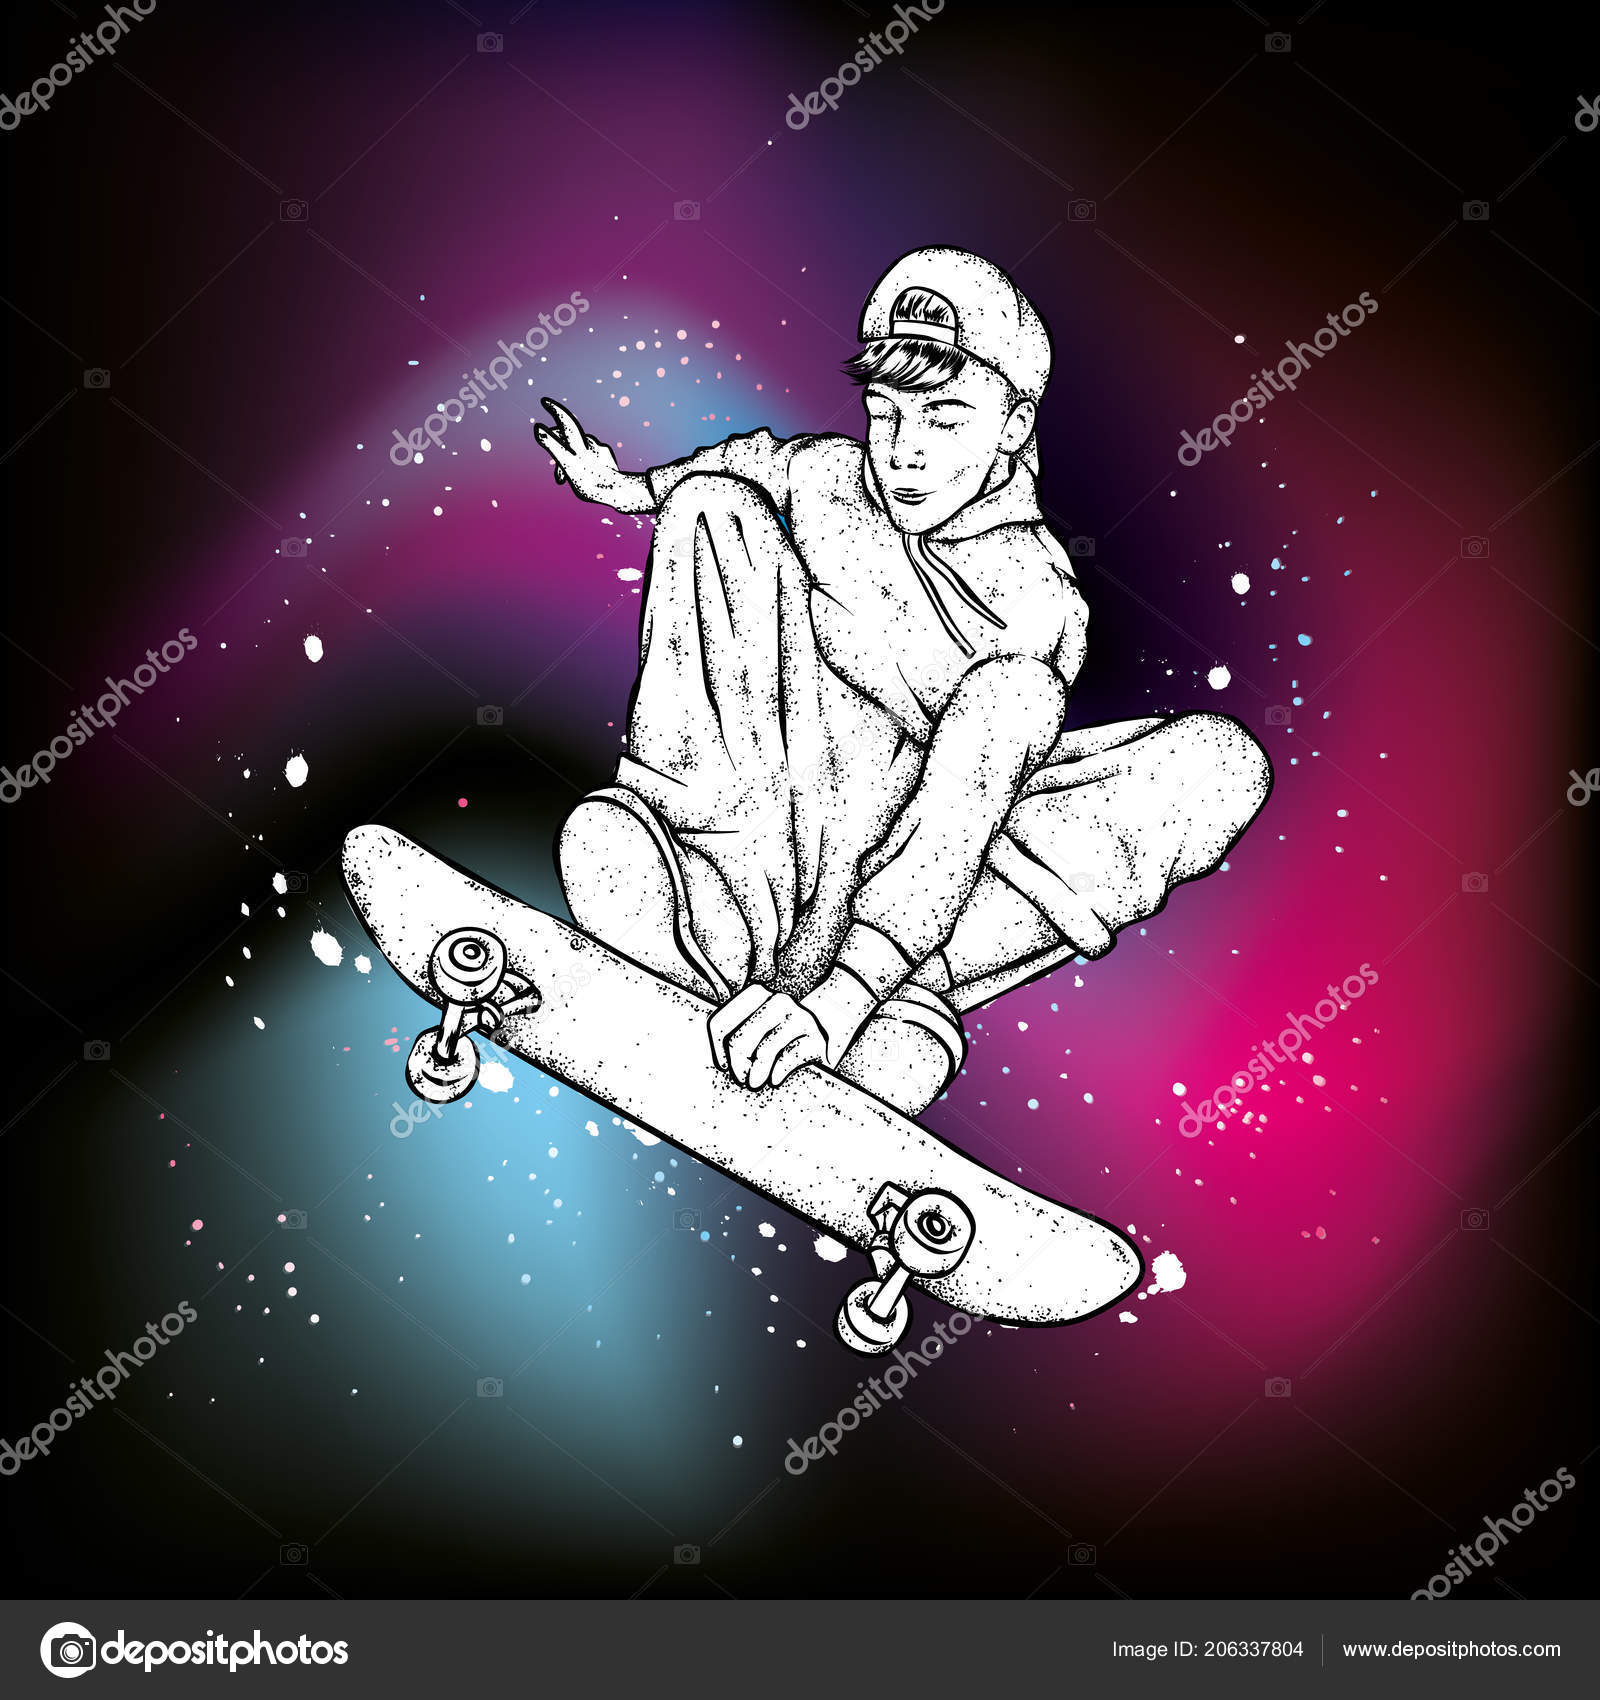 ジーンズやスニーカーでスタイリッシュなスケーター スケートボード ポスターやポスターのベクトルイラスト 服のプリント ストリートカルチャー ストックベクター C Juliagrin